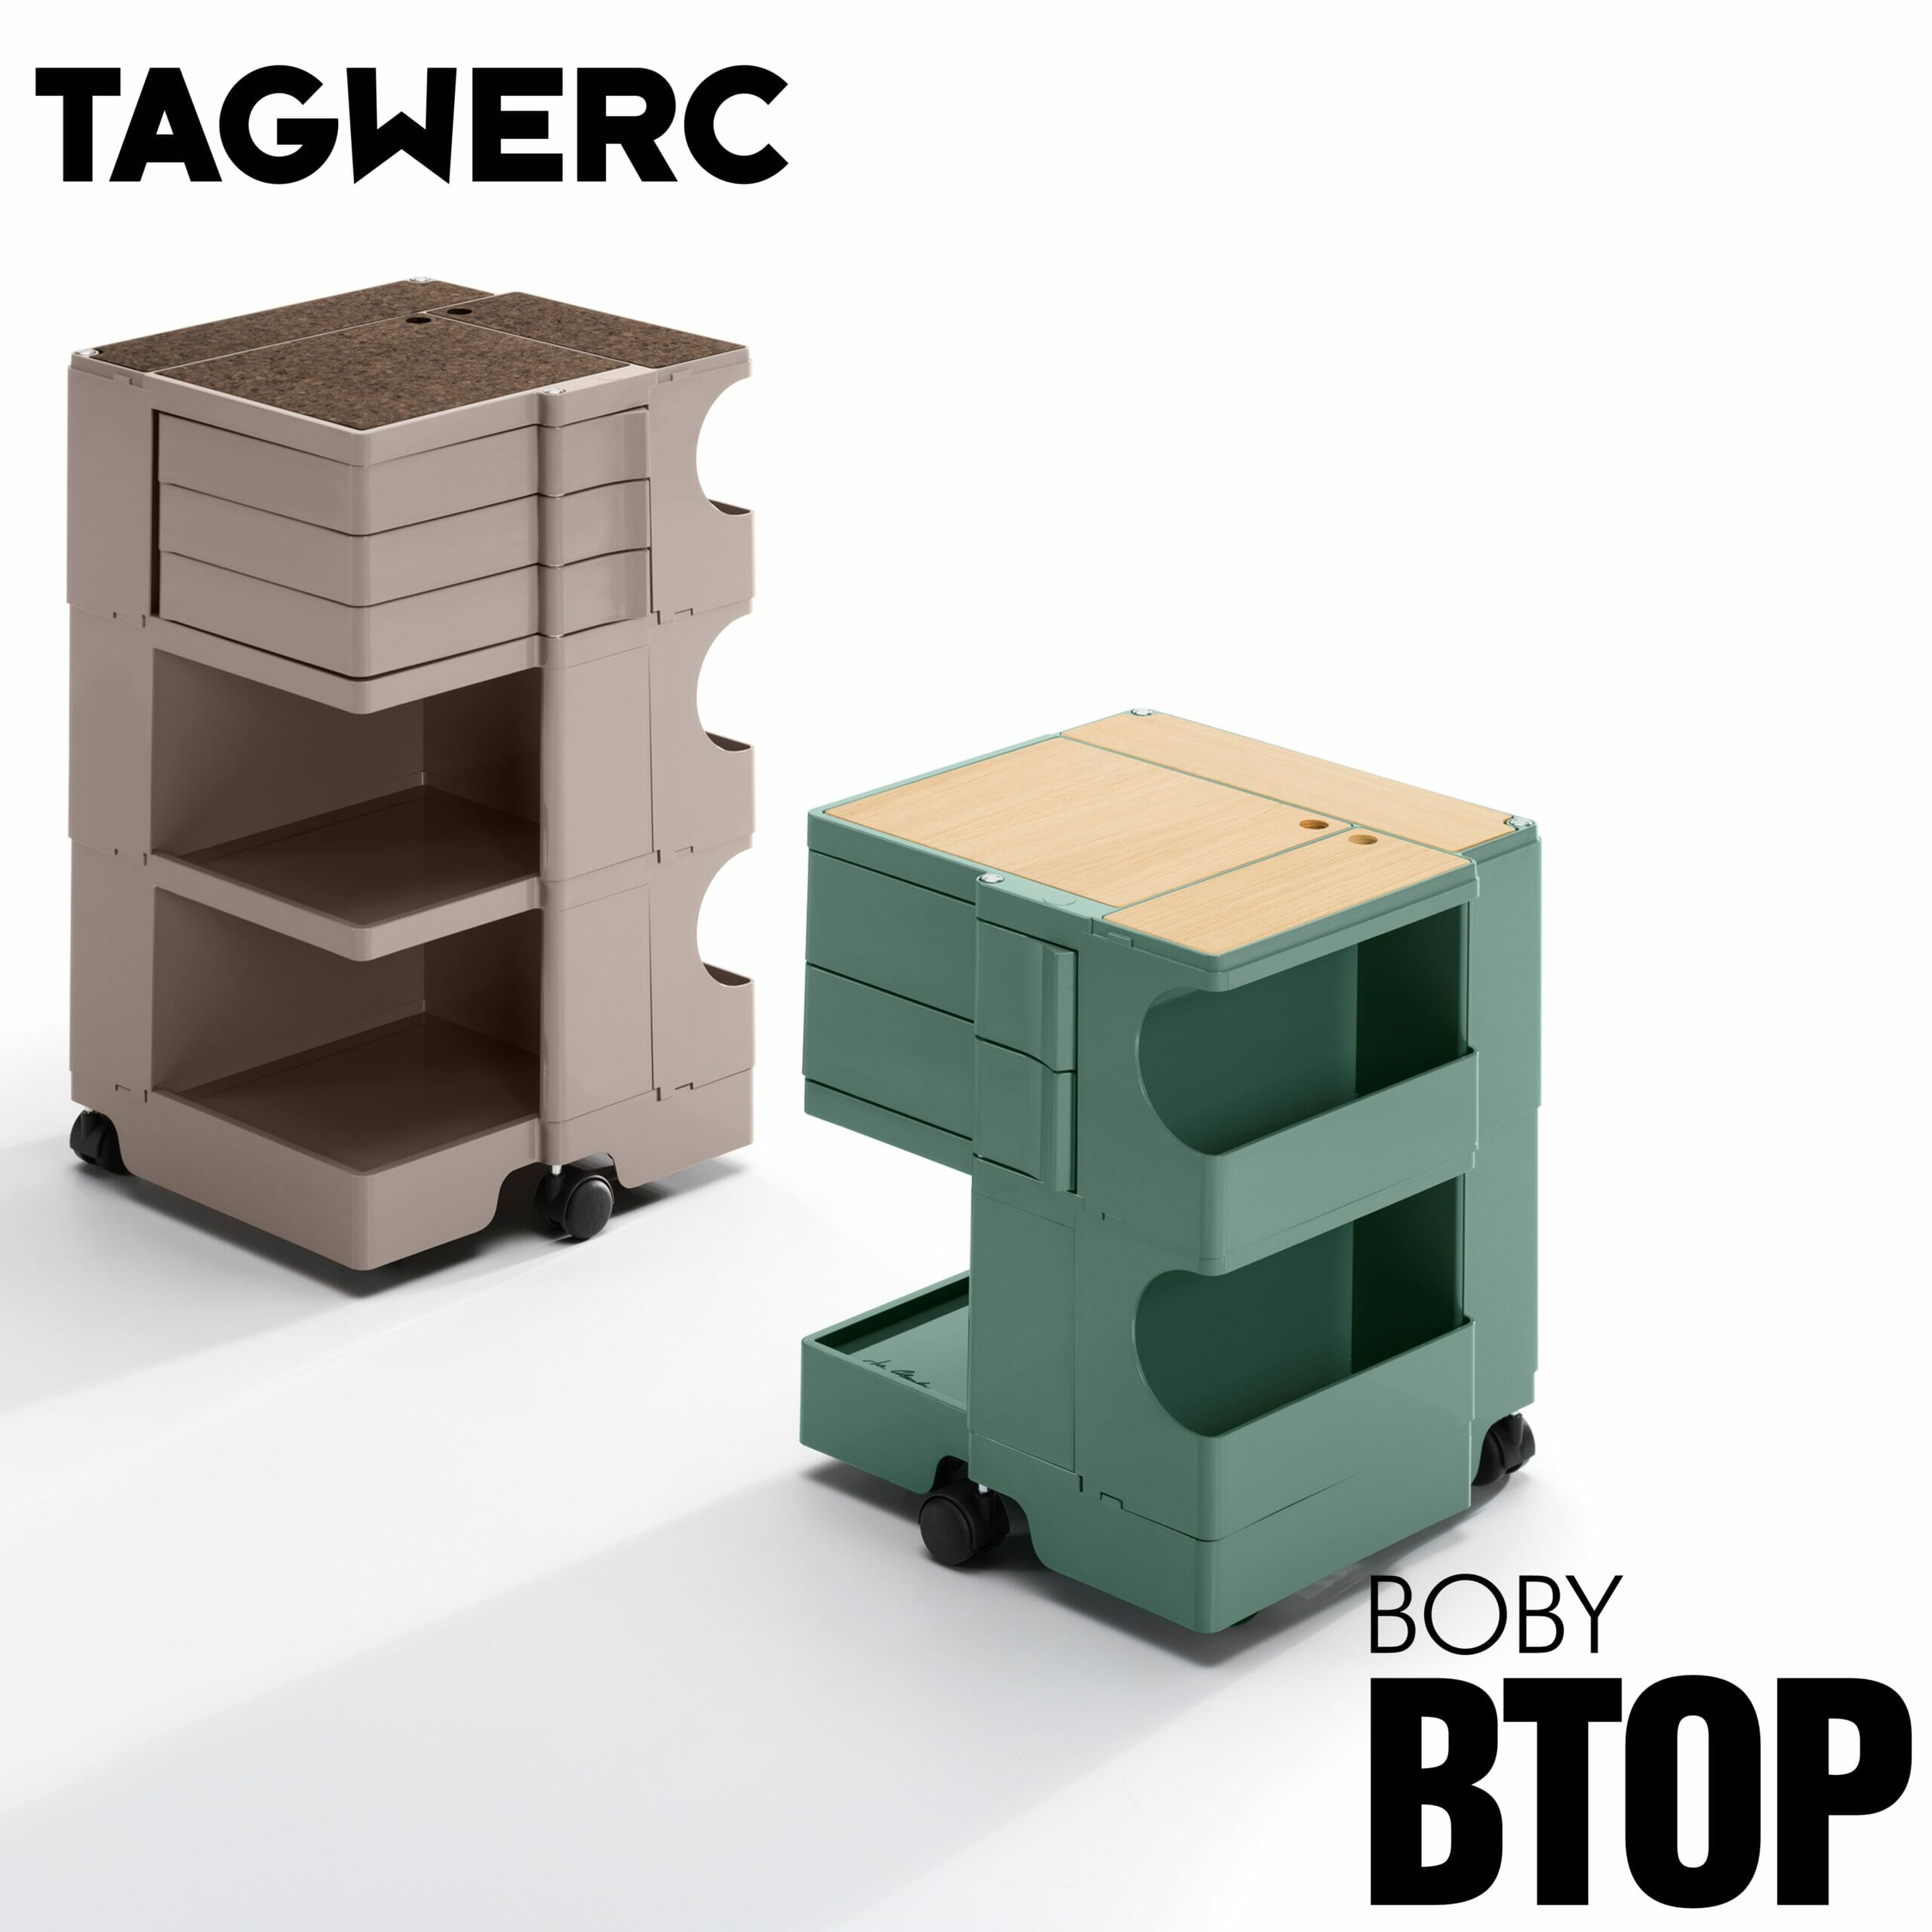 BTOP Eiche Natur Auflage für Boby Rollcontainer - B—Line